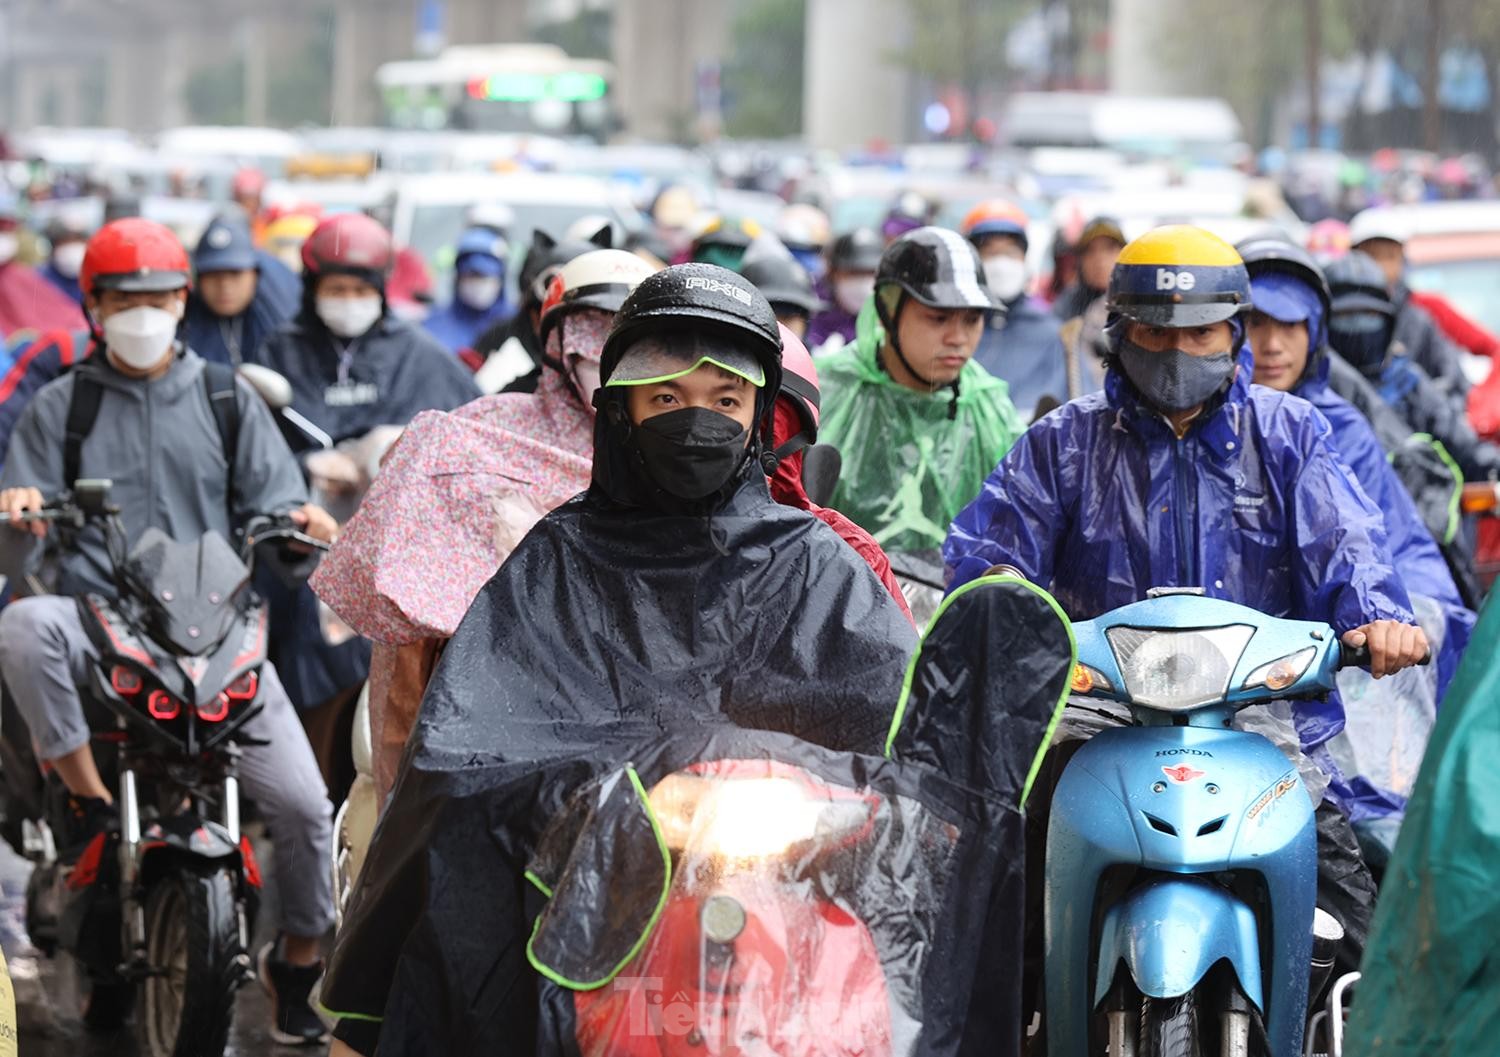 Gió mùa tràn về Hà Nội, biển người nhích từng bước giữa cơn mưa lúc sáng sớm - Ảnh 3.